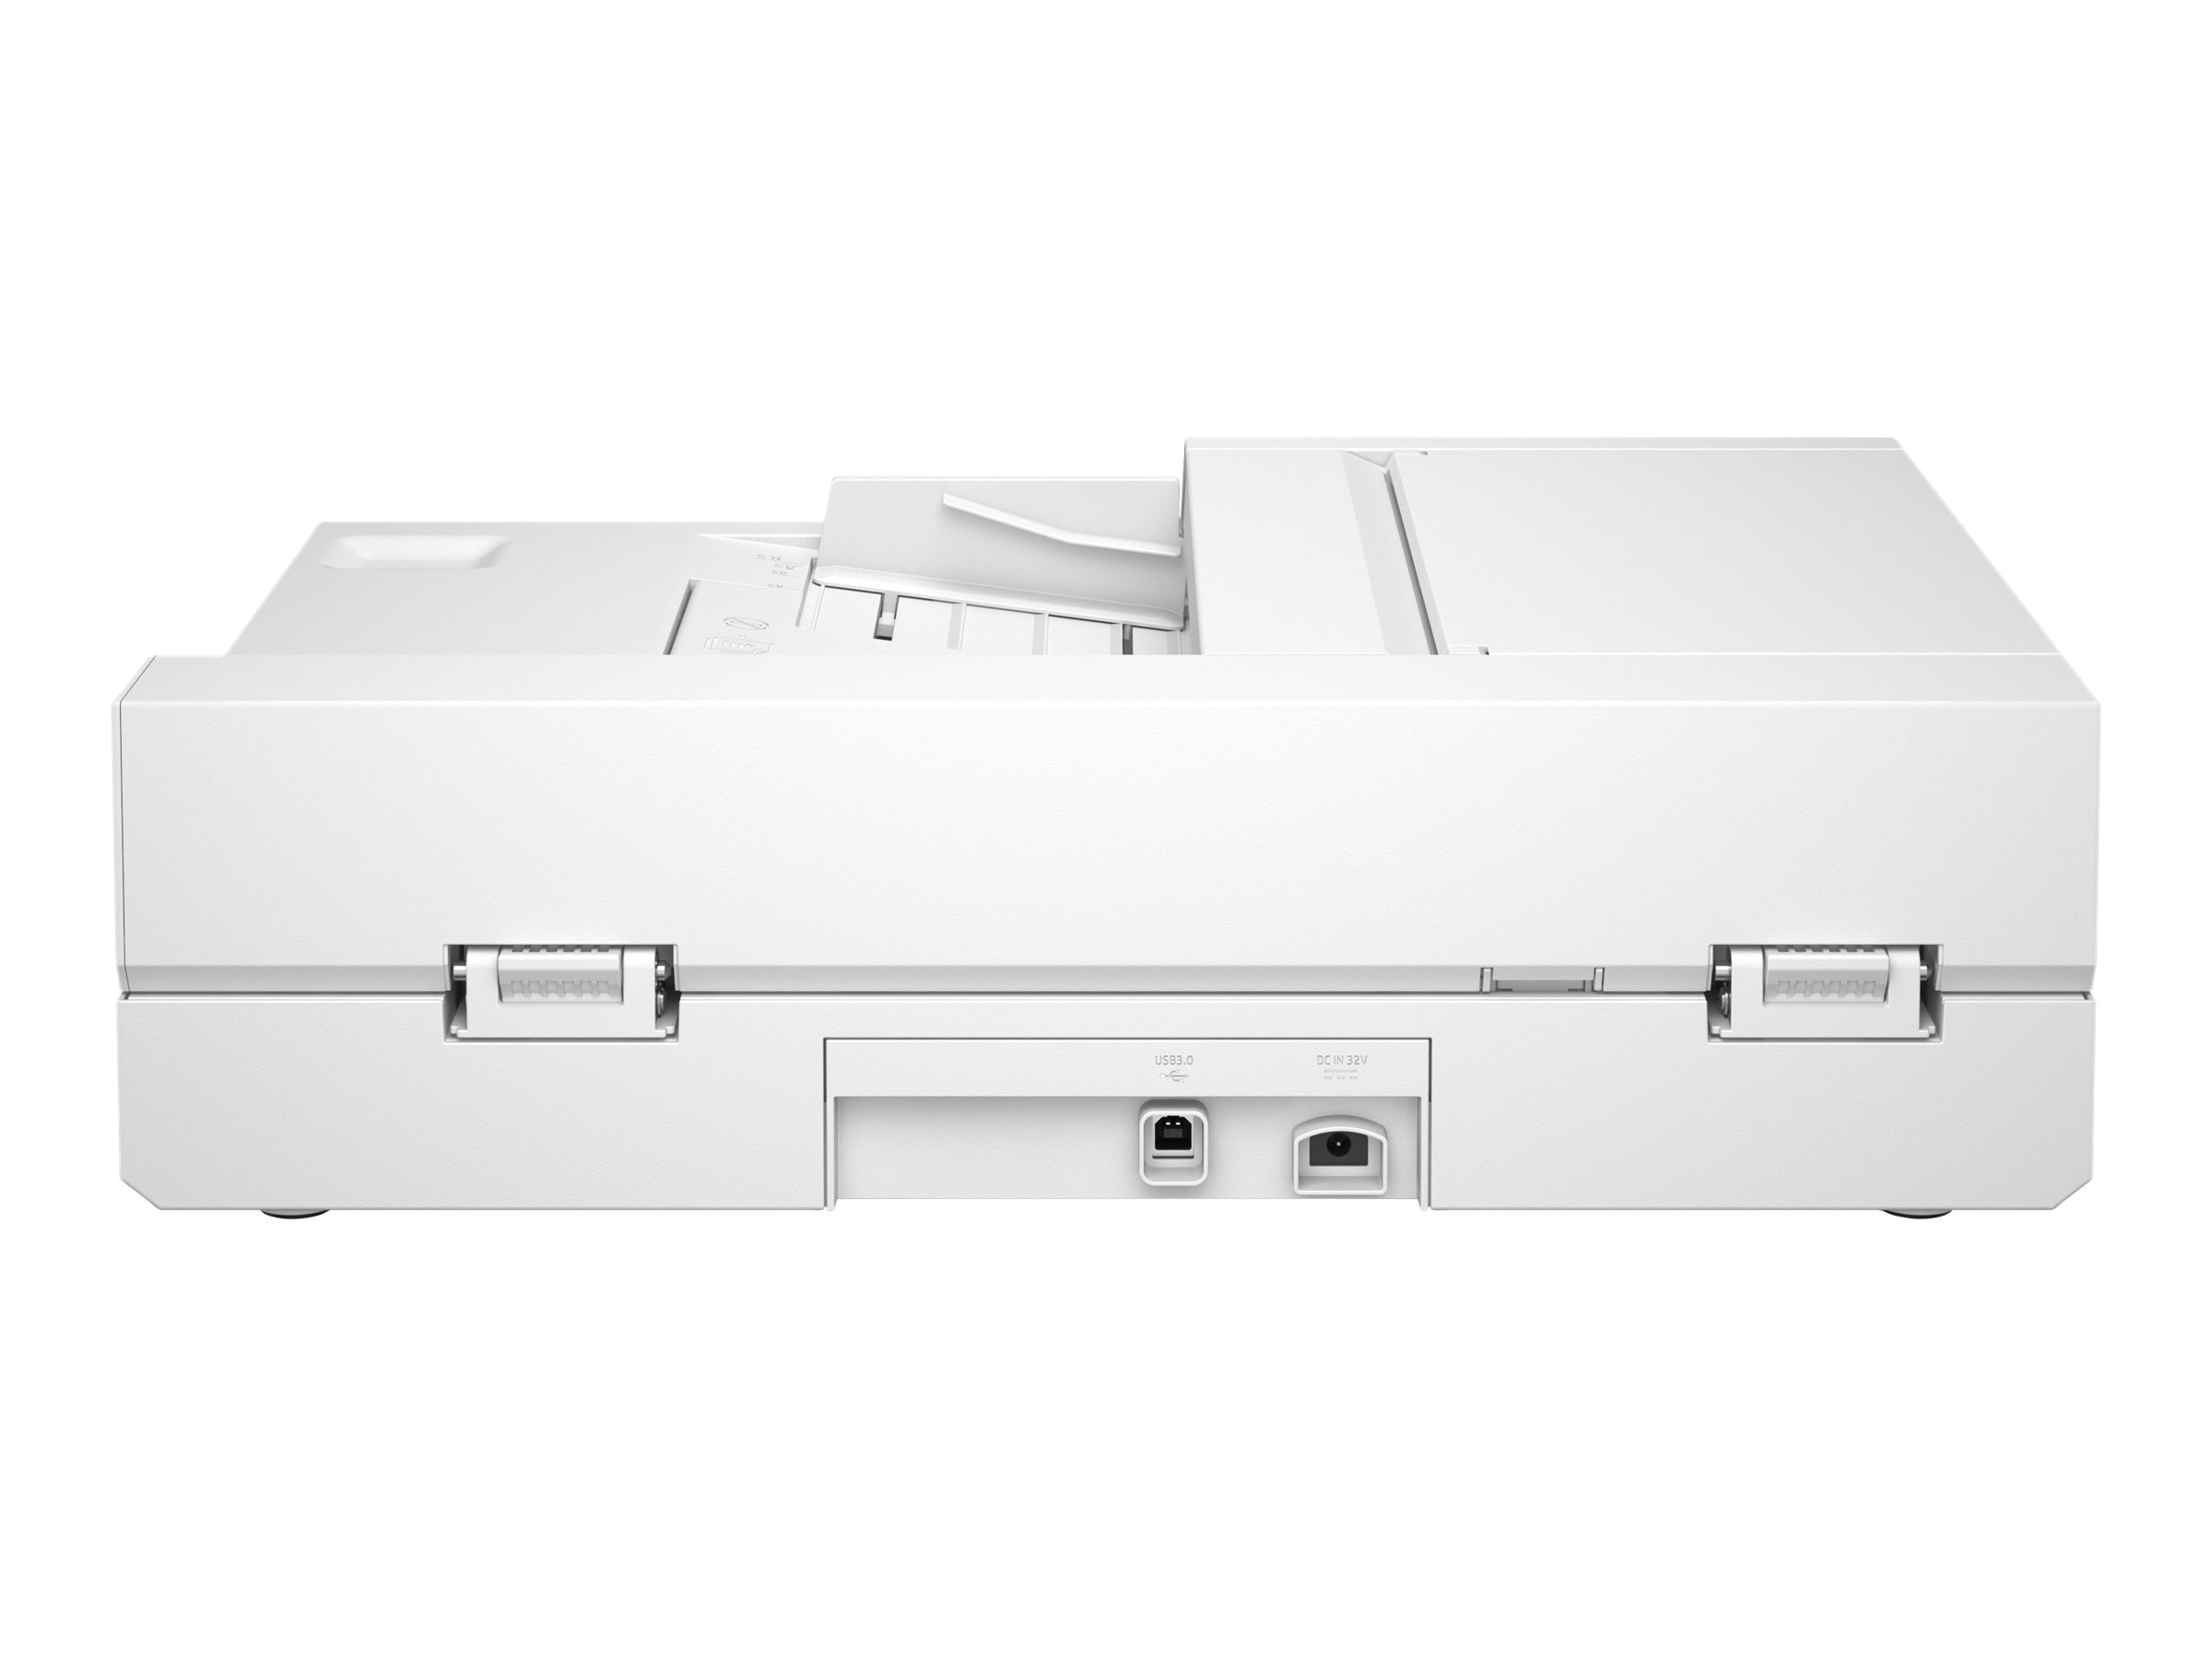 HP Scanjet Pro 2600 f1 - Scanner de documents - CMOS / CIS - Recto-verso - A4/Legal - 1200 dpi x 1200 dpi - jusqu'à 25 ppm (mono) / jusqu'à 25 ppm (couleur) - Chargeur automatique de documents (60 feuilles) - jusqu'à 1500 pages par jour - USB 2.0 - 20G05A#B19 - Scanneurs de documents